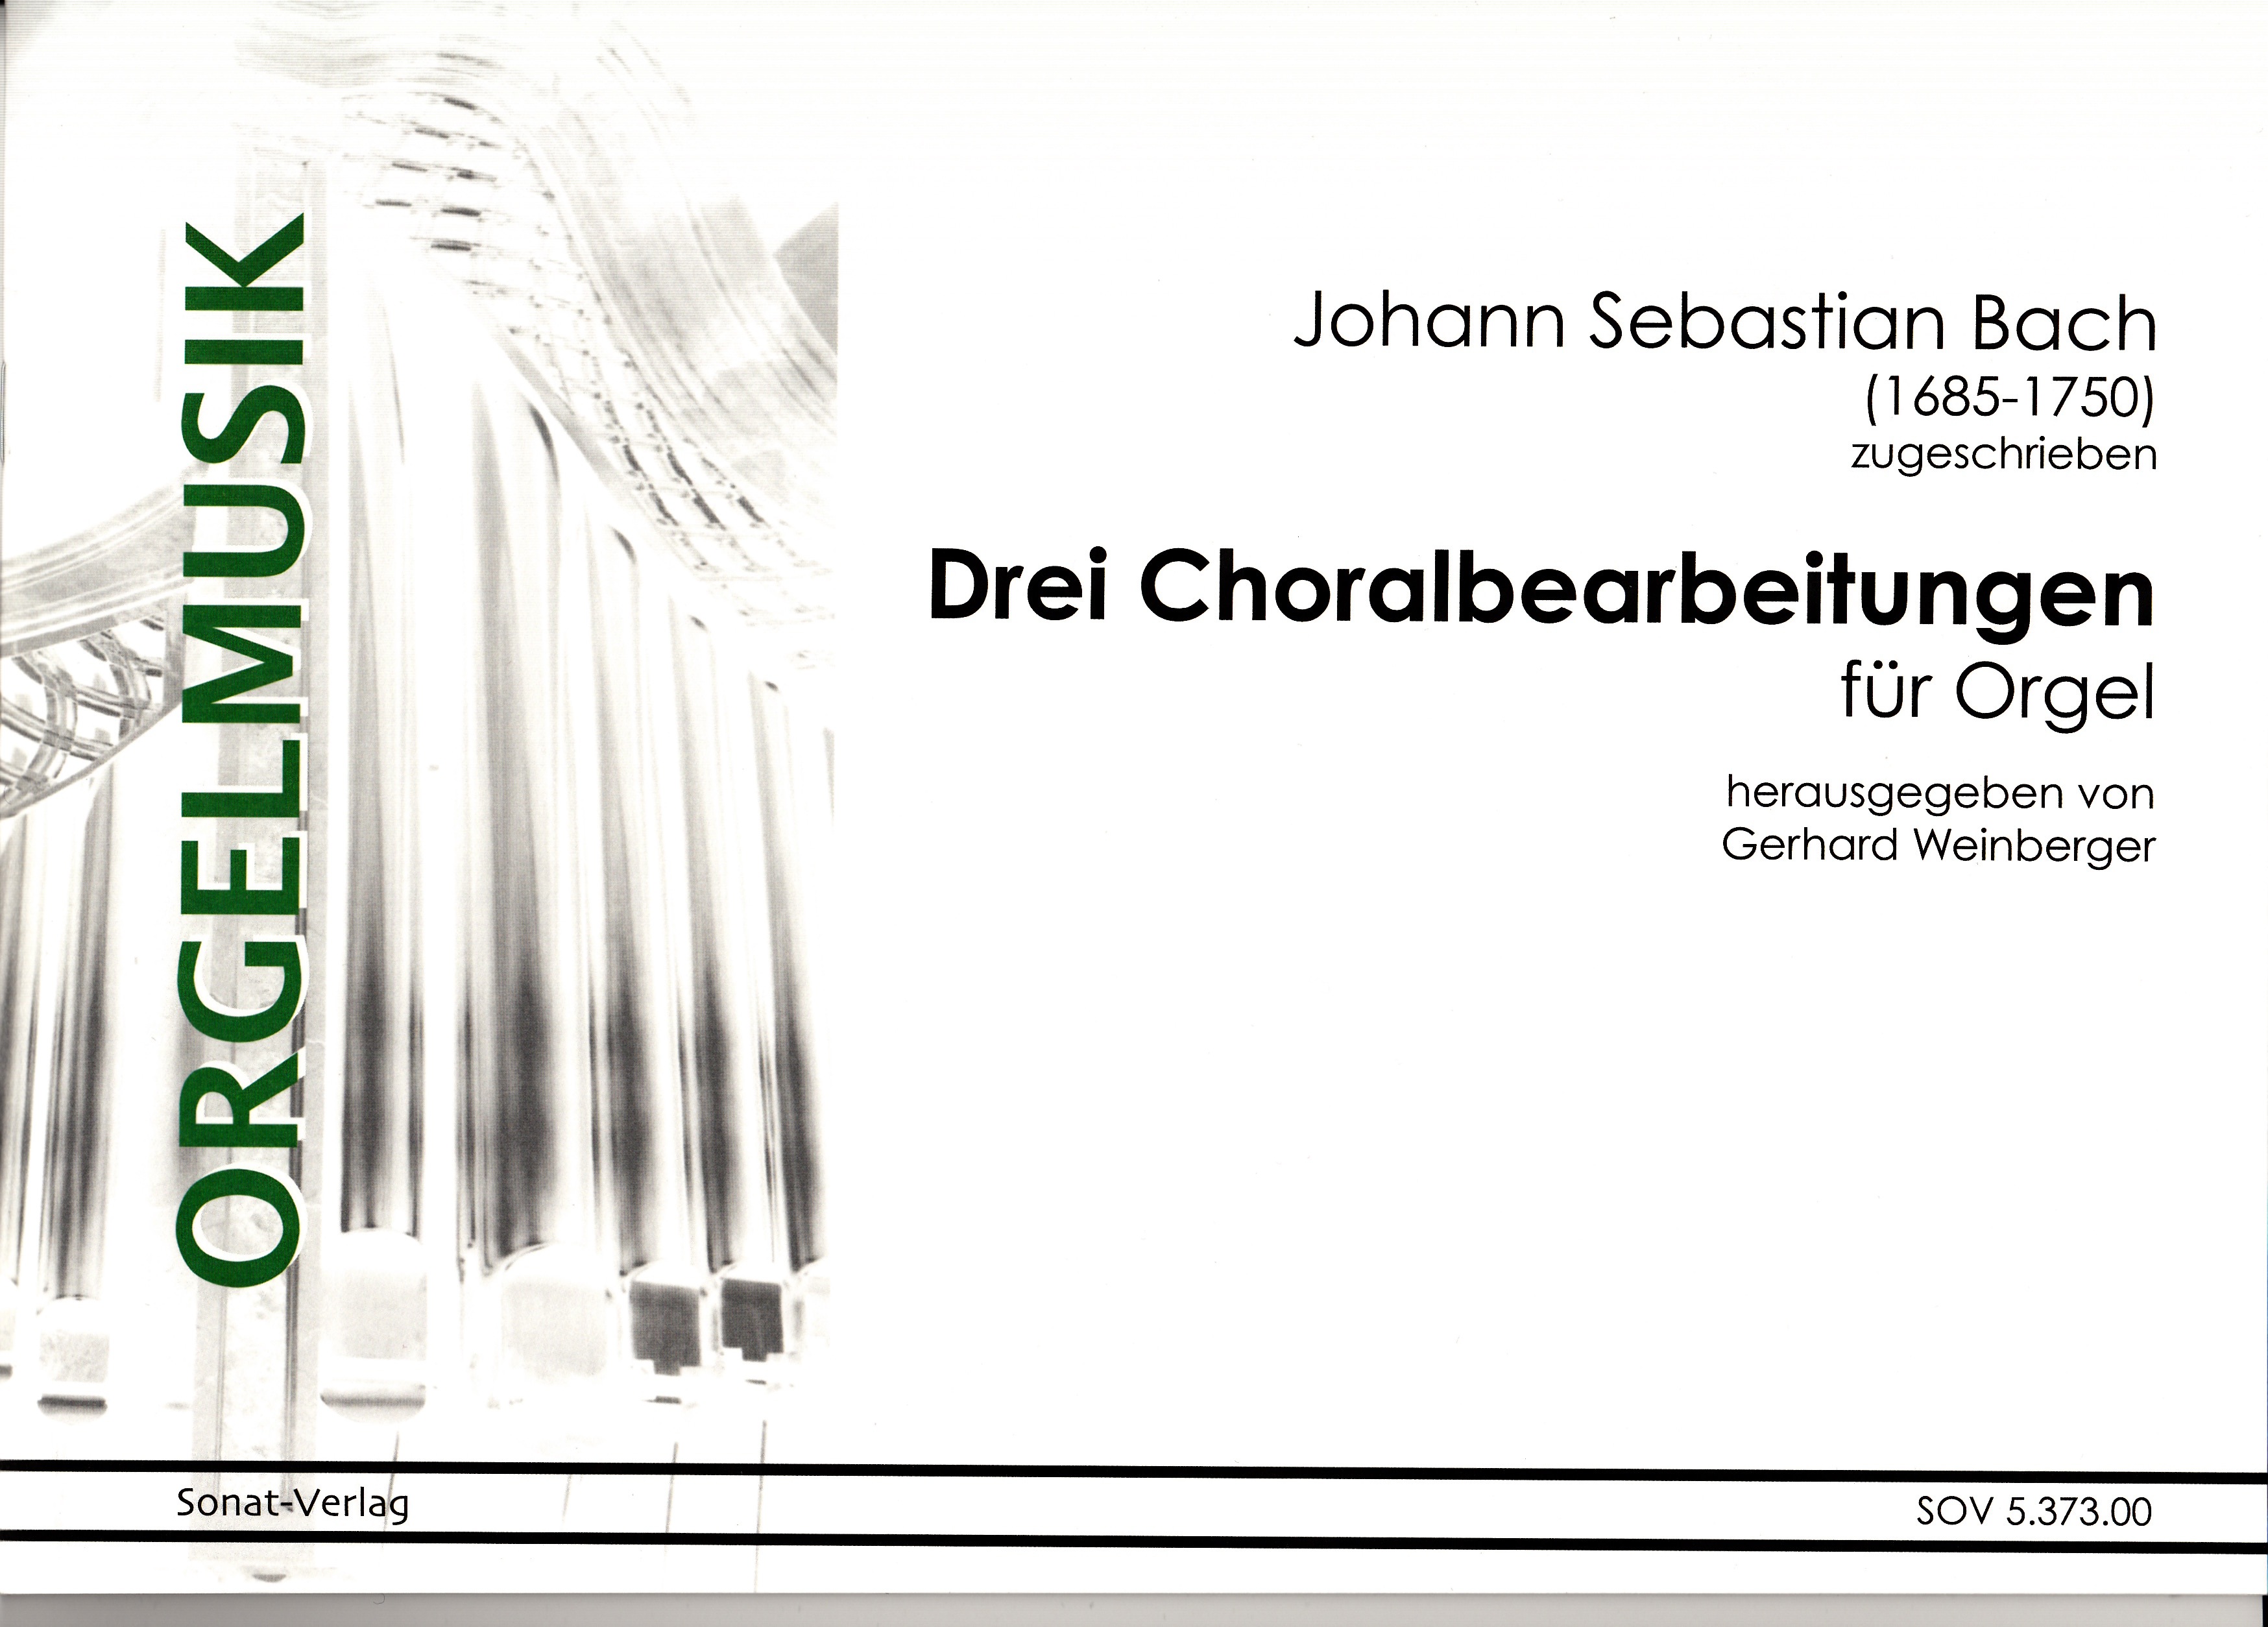 Joh. Seb. Bach (zugeschrieben): Drei Choralbearbeitungen für Orgel